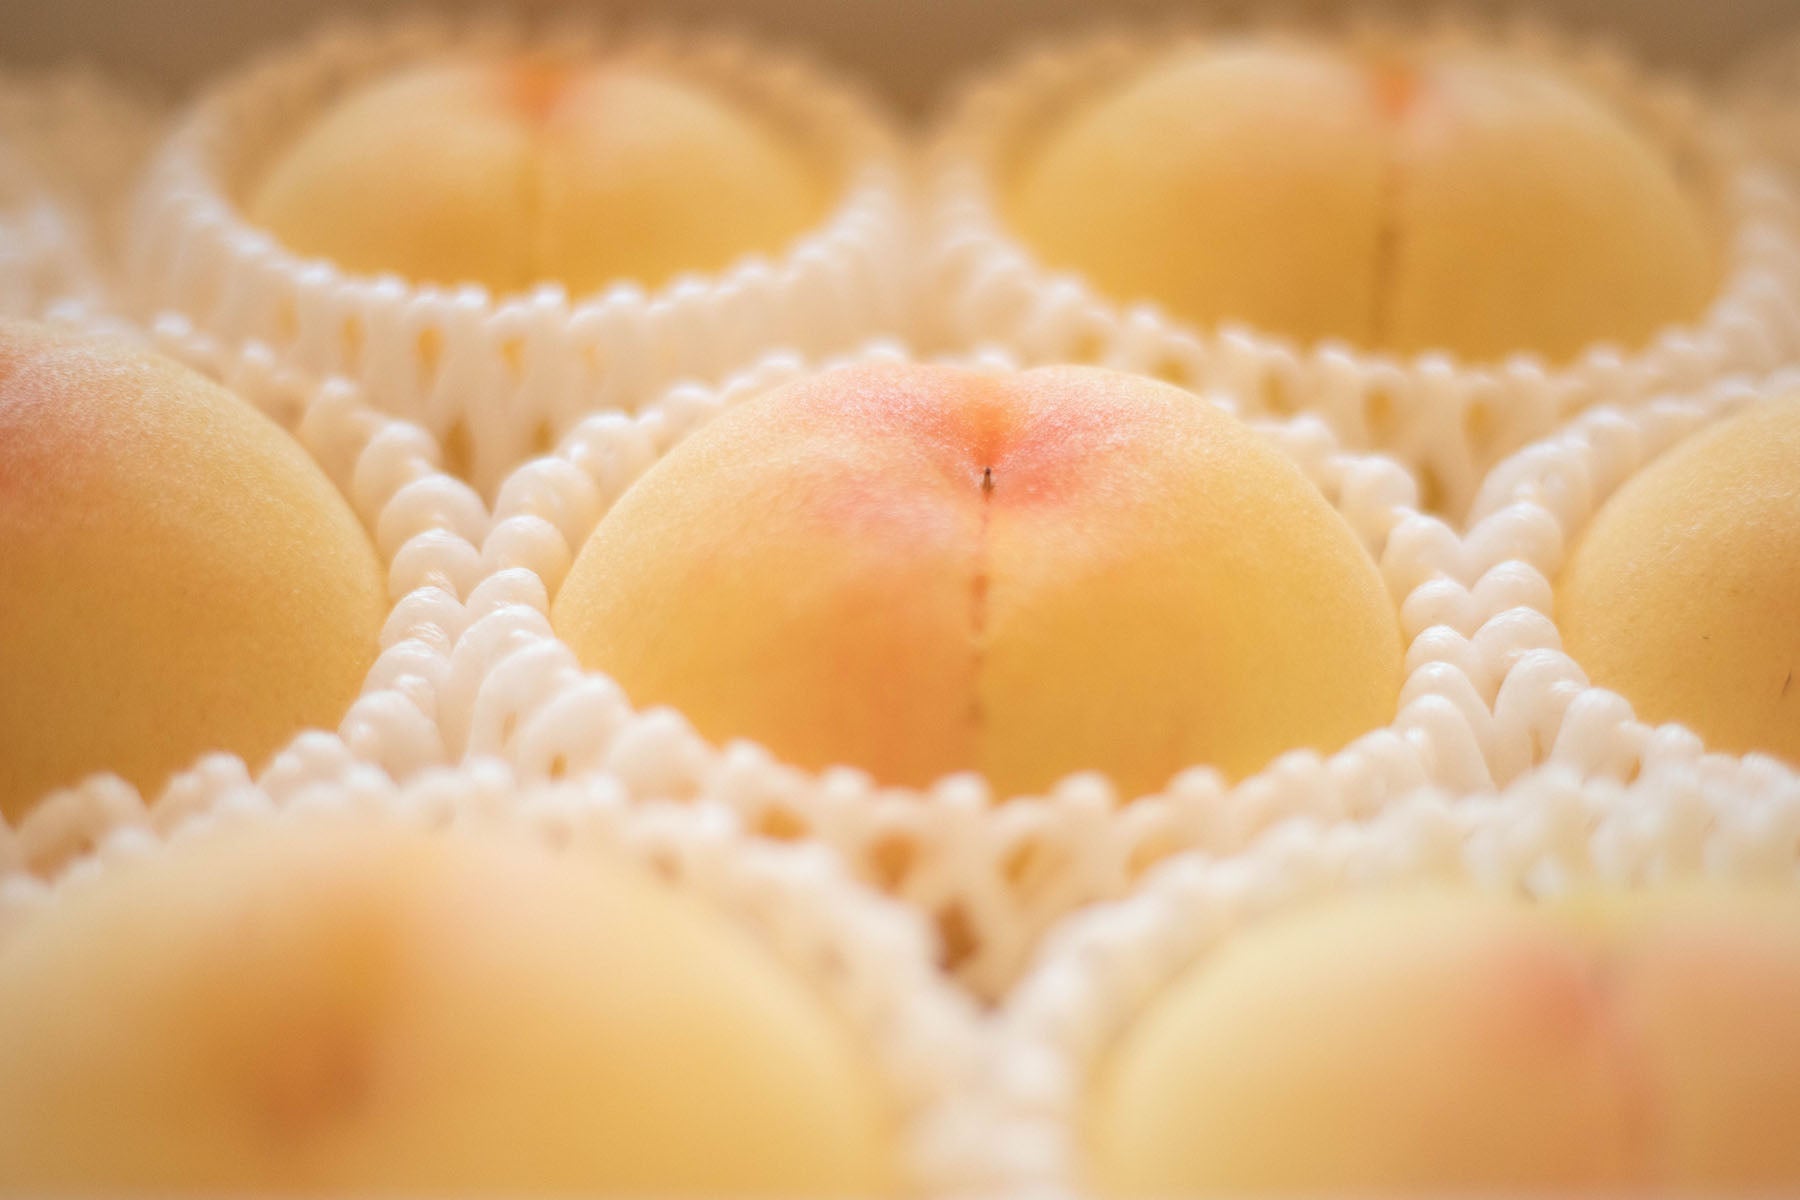 【岡山県／エコファームMITANI】8月の特別栽培白皇（白桃）。清水白桃に勝るとも劣らない最高の白桃です。